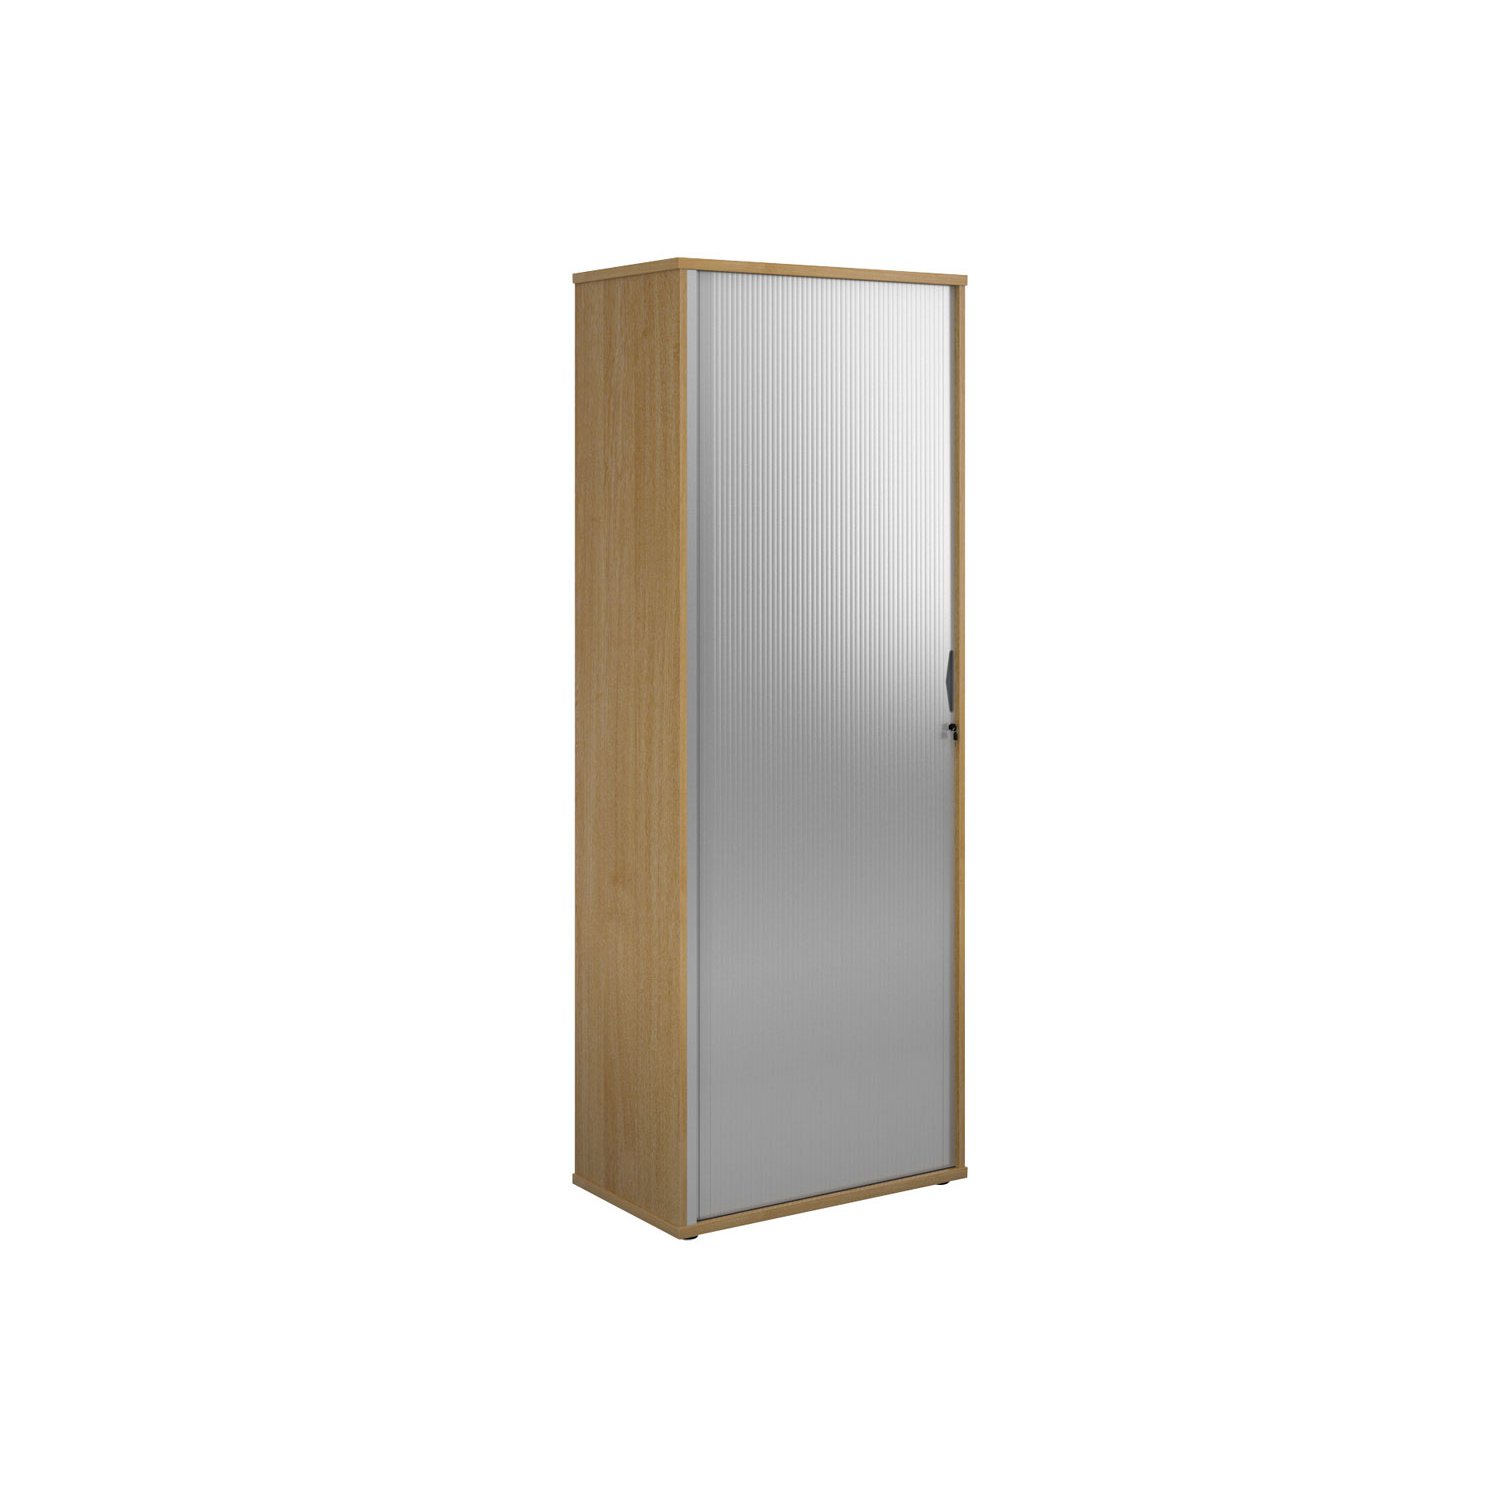 Single Door Wooden Tambour Cupboard, 5 Shelf - 80wx47dx214h (cm), Oak